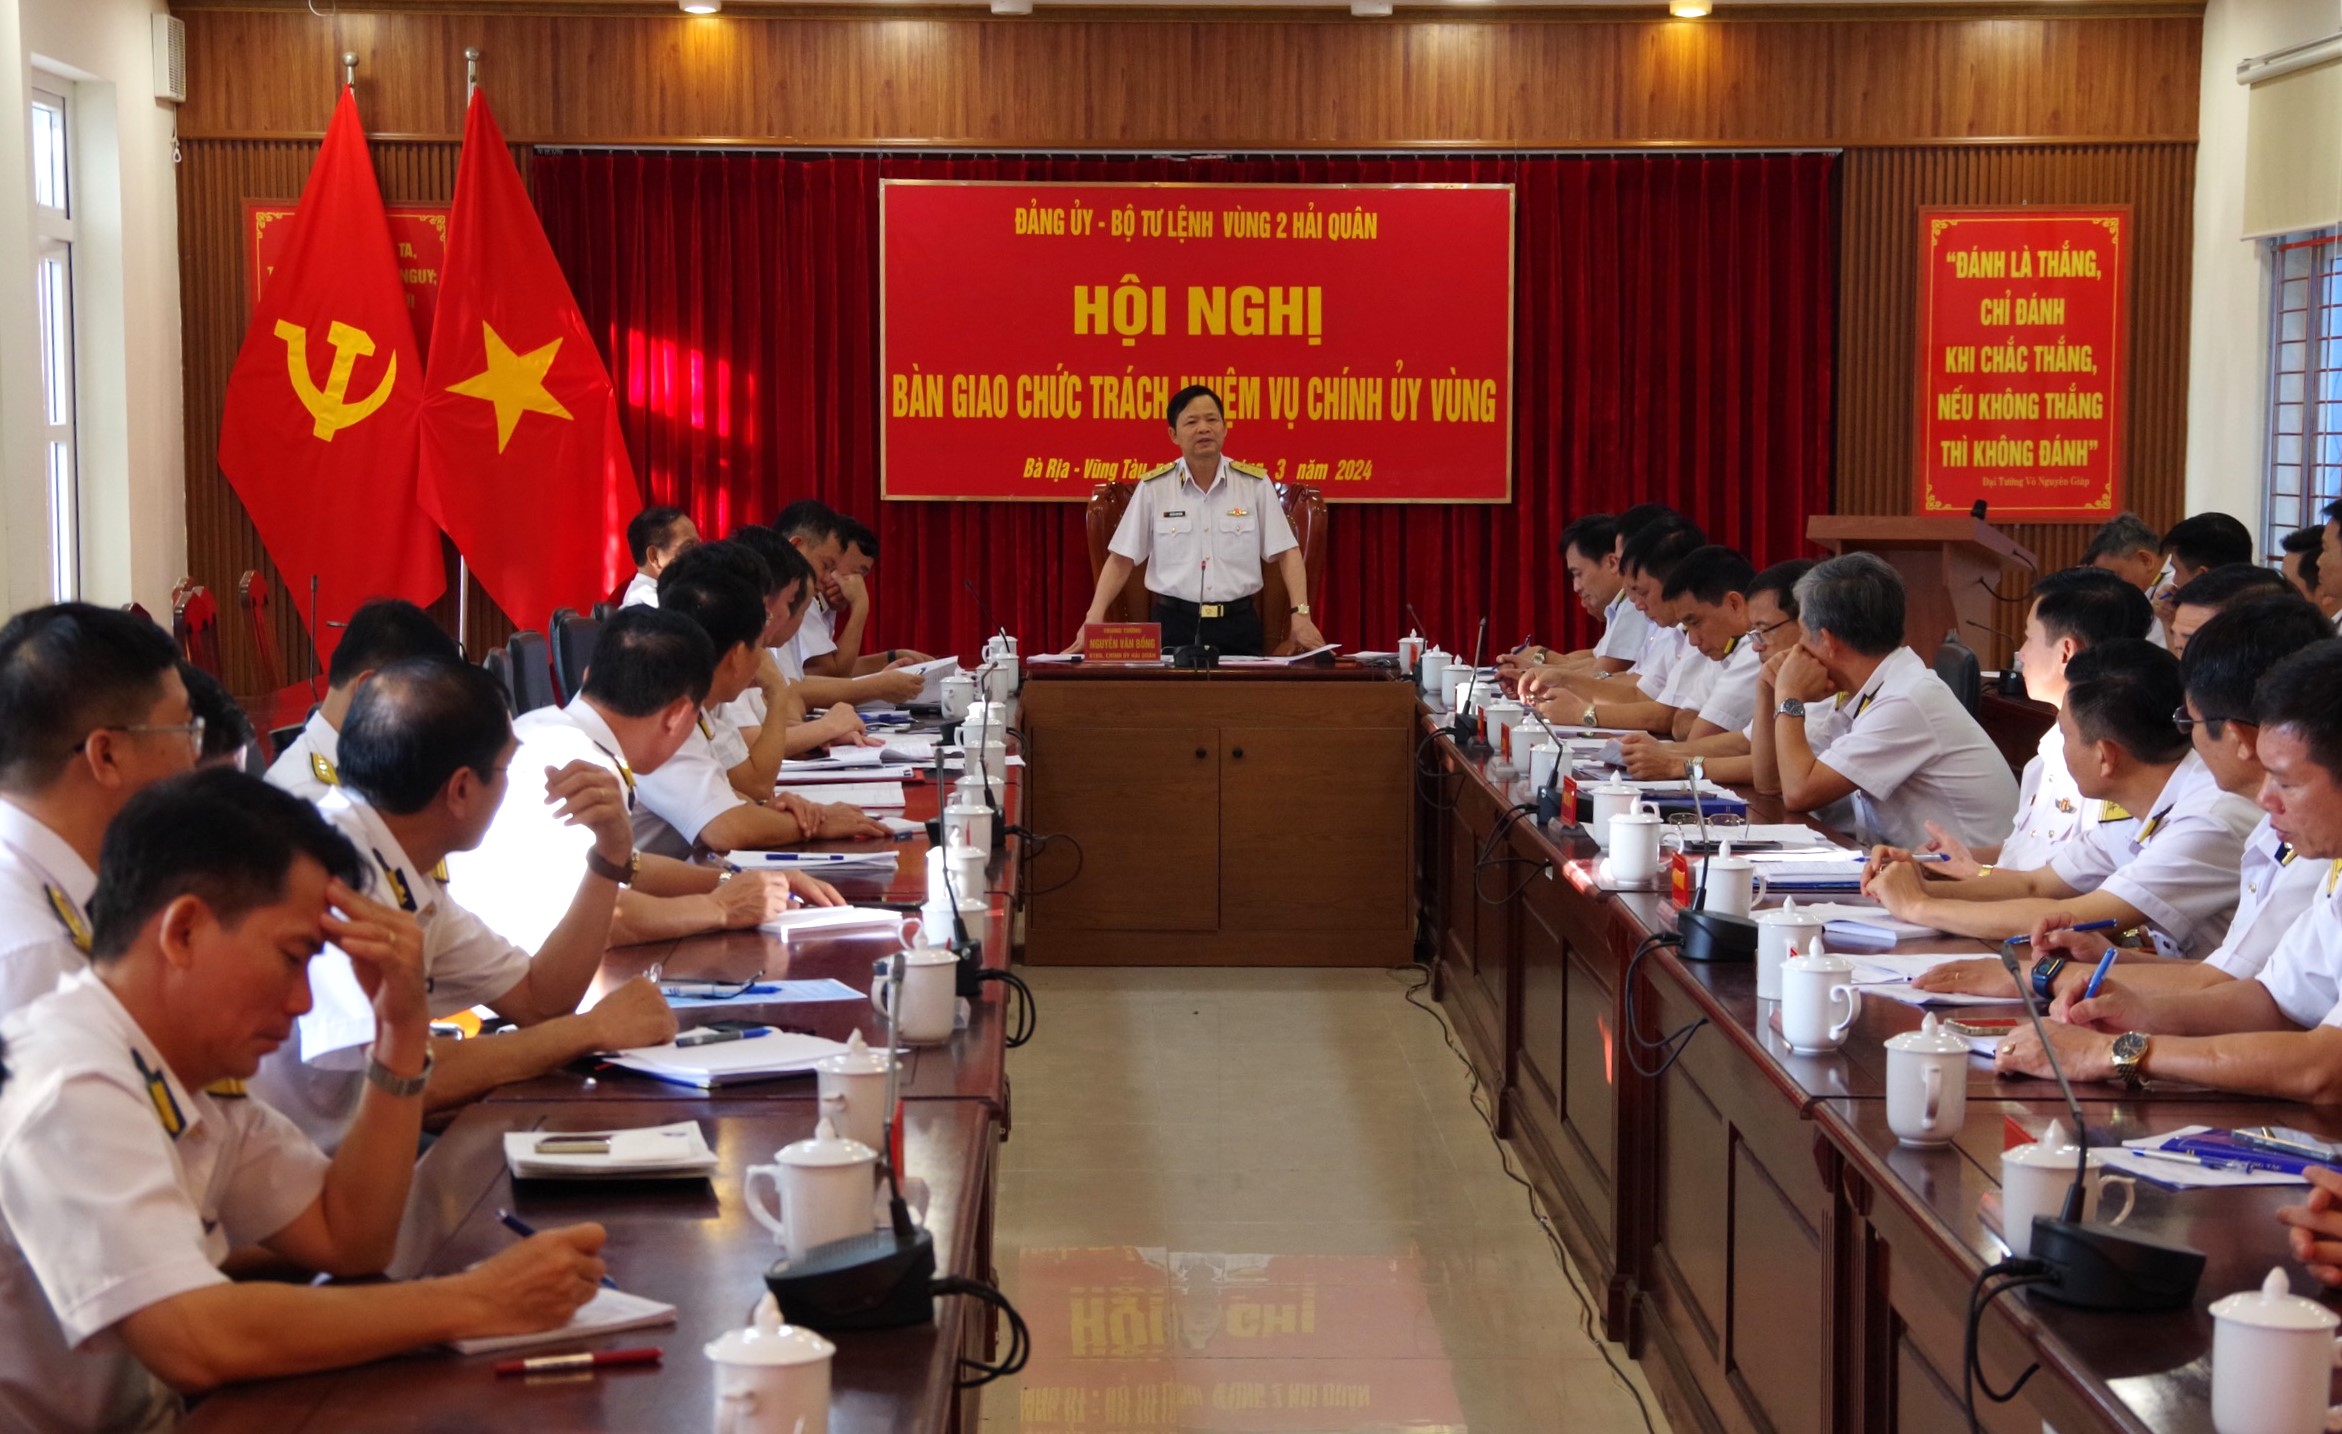 Trung tướng Nguyễn Văn Bổng, Bí thư Đảng ủy, Chính ủy Quân chủng Hải quân dự chỉ đạo tại hội nghị bàn giao chức trách, nhiệm vụ Chính ủy Vùng 2 Hải quân.